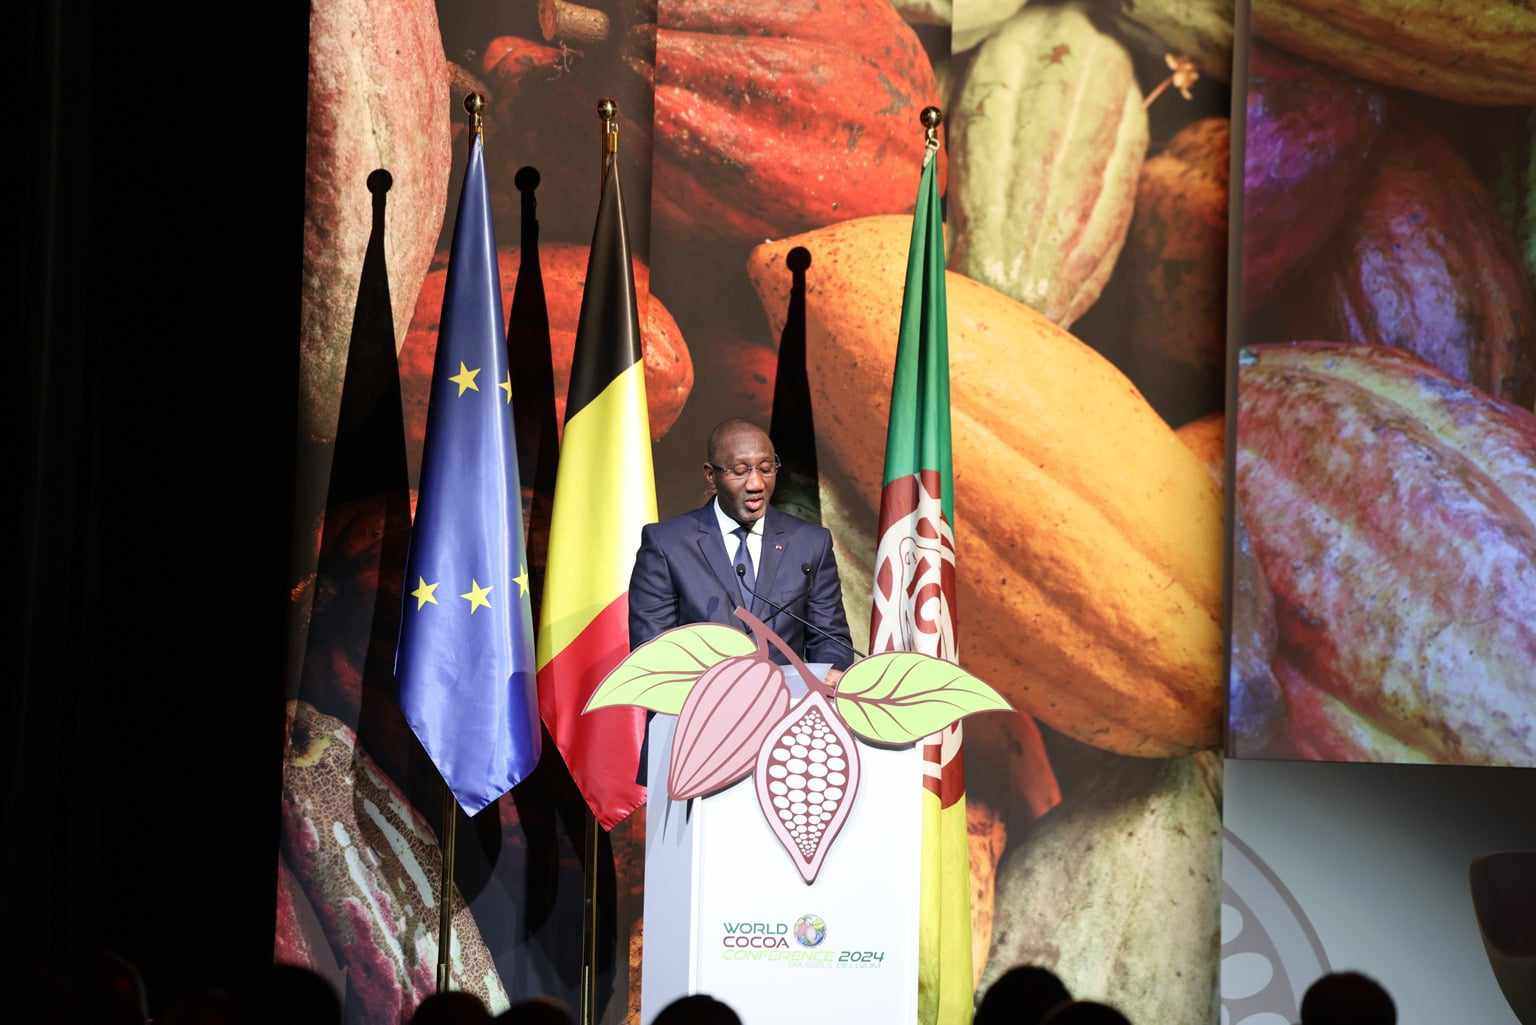 5ième Conférence mondiale du cacao à Bruxelles : le Ministre Souleymane Diarrassouba invite à intégrer les coûts de la durabilité dans la rémunération des producteurs pour une chaîne de valeur cacaoyère plus équitable